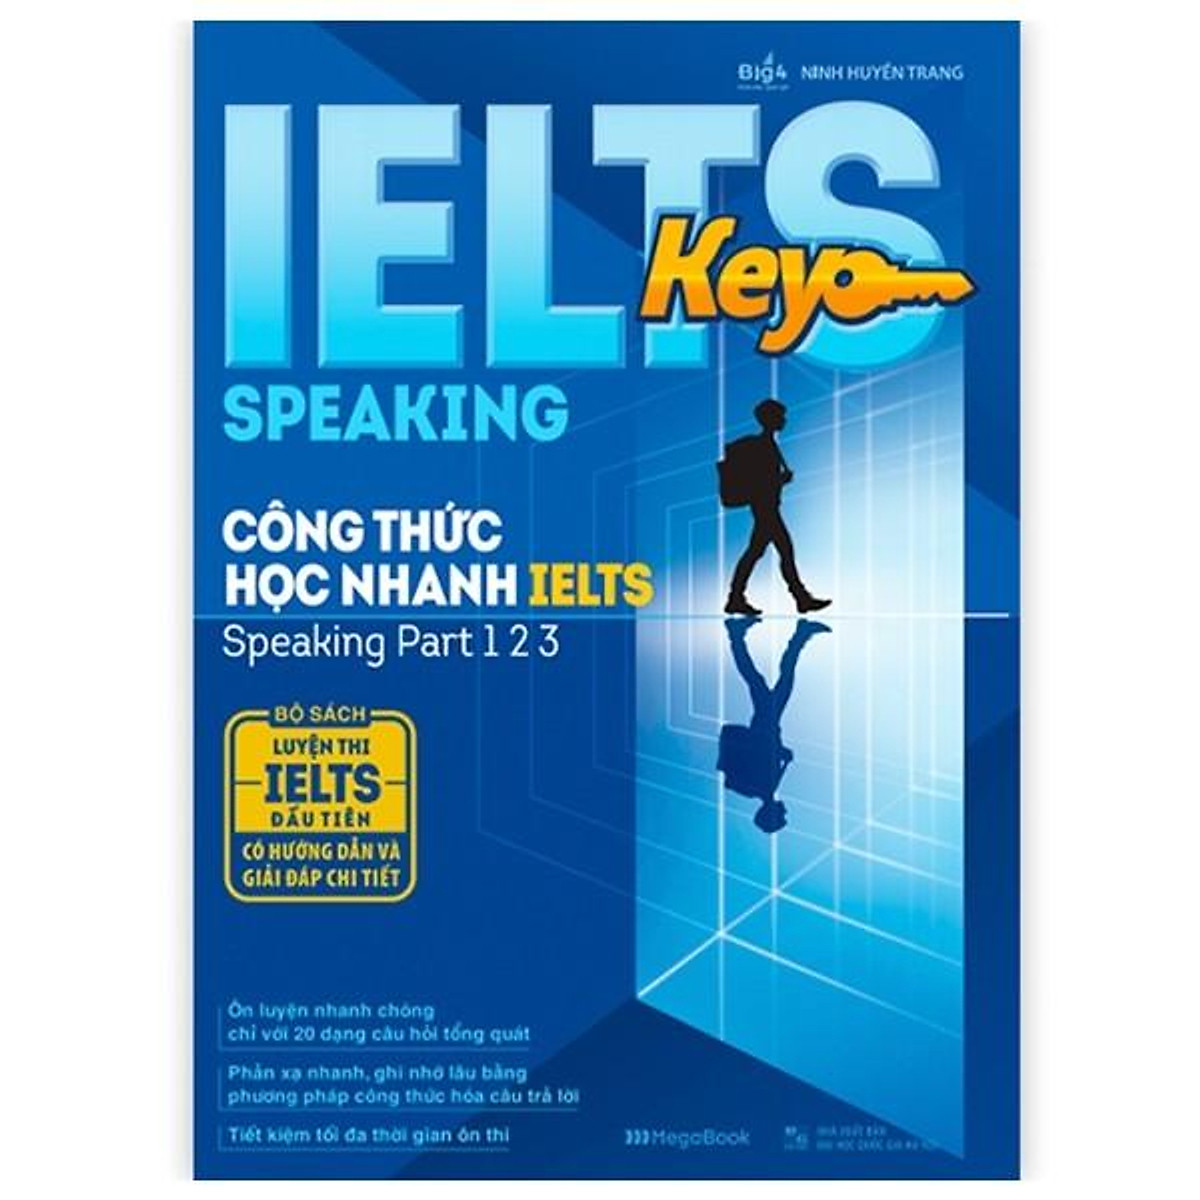 IELTS KEY SPEAKING - Công thức học nhanh IELTS - speaking part 1 2 3